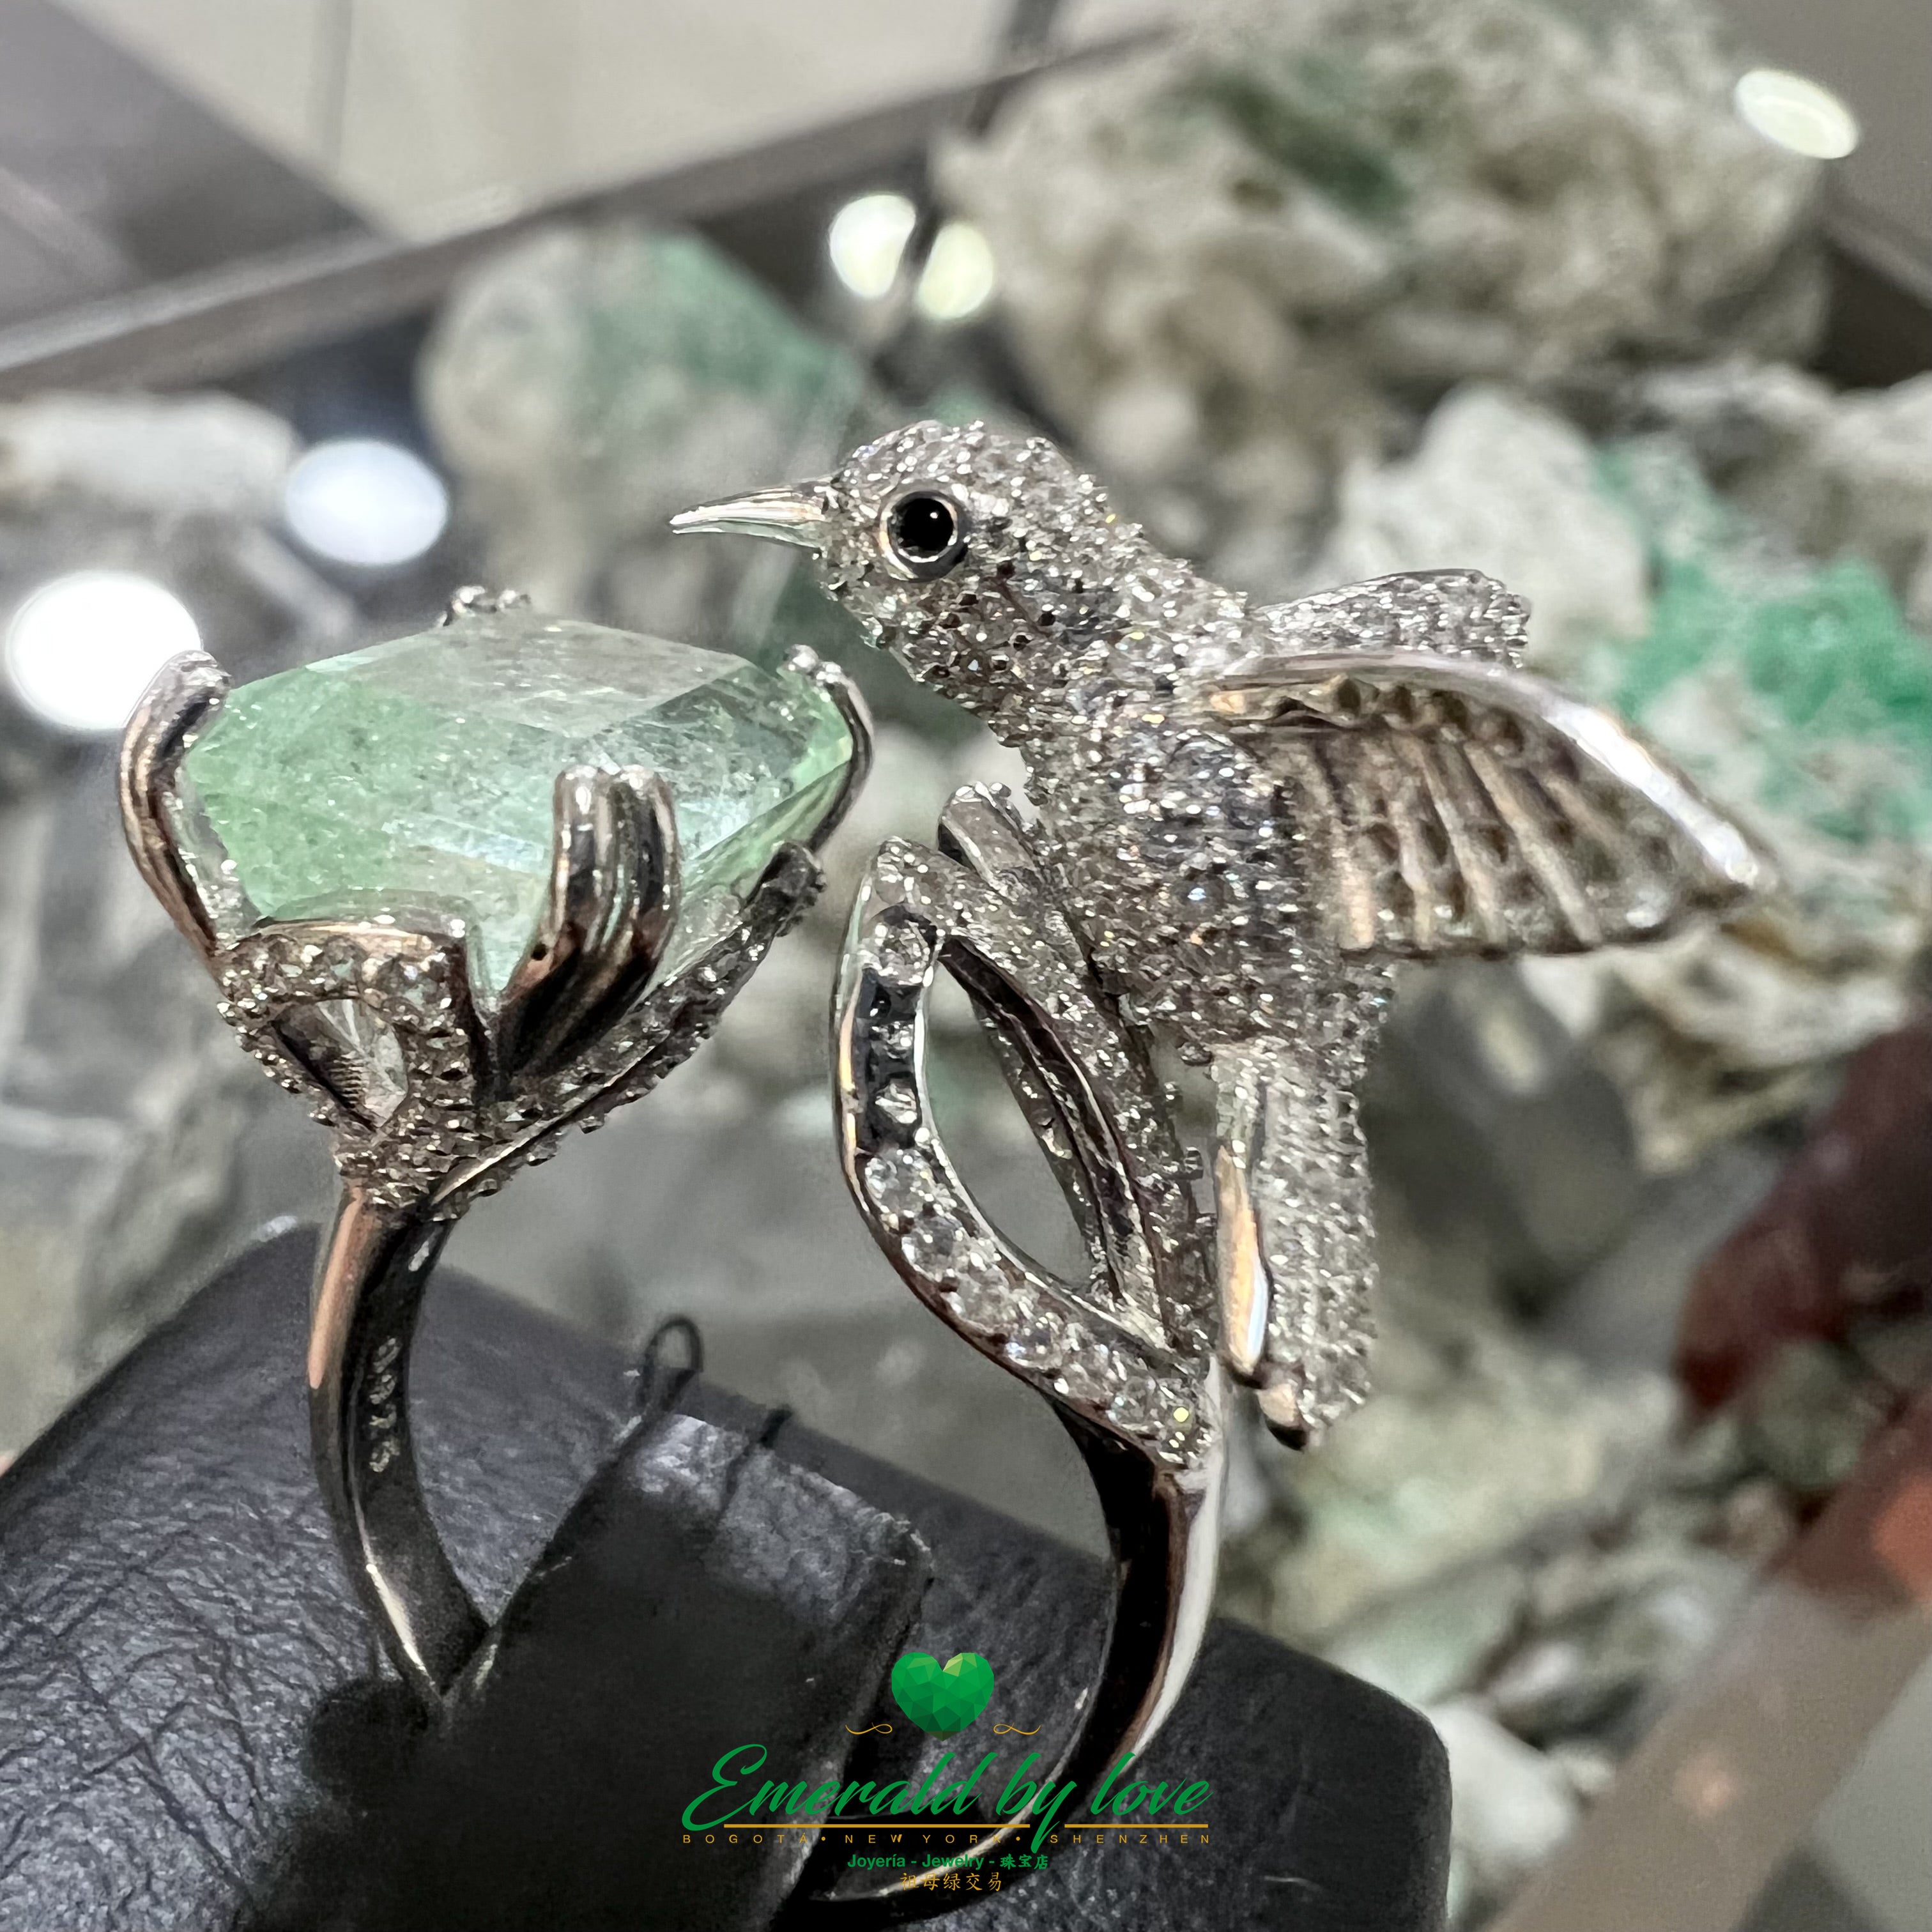 Espectacular anillo rectangular de cristal esmeralda con detalle de colibrí